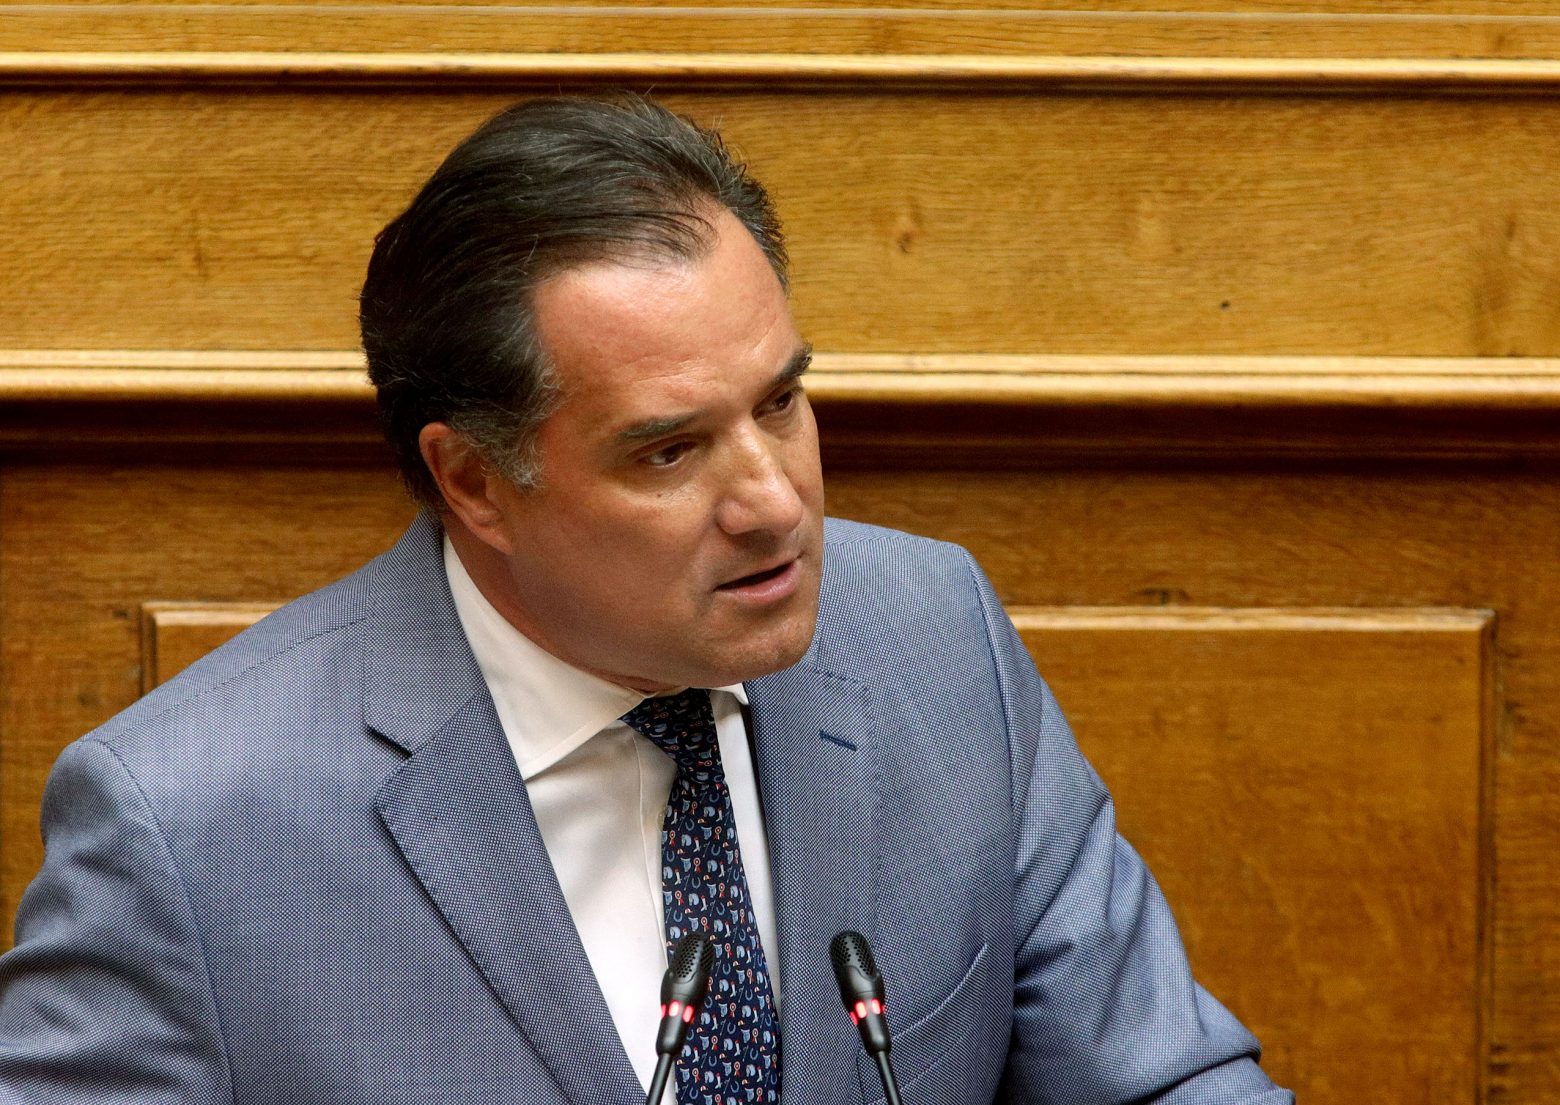 Ο Α.Γεωργιάδης είπε ότι οι υπουργοί πρέπει να λένε ψέματα στην Βουλή για την ασφάλεια των Μεταφορών για να μην ανησυχούν οι πολίτες!